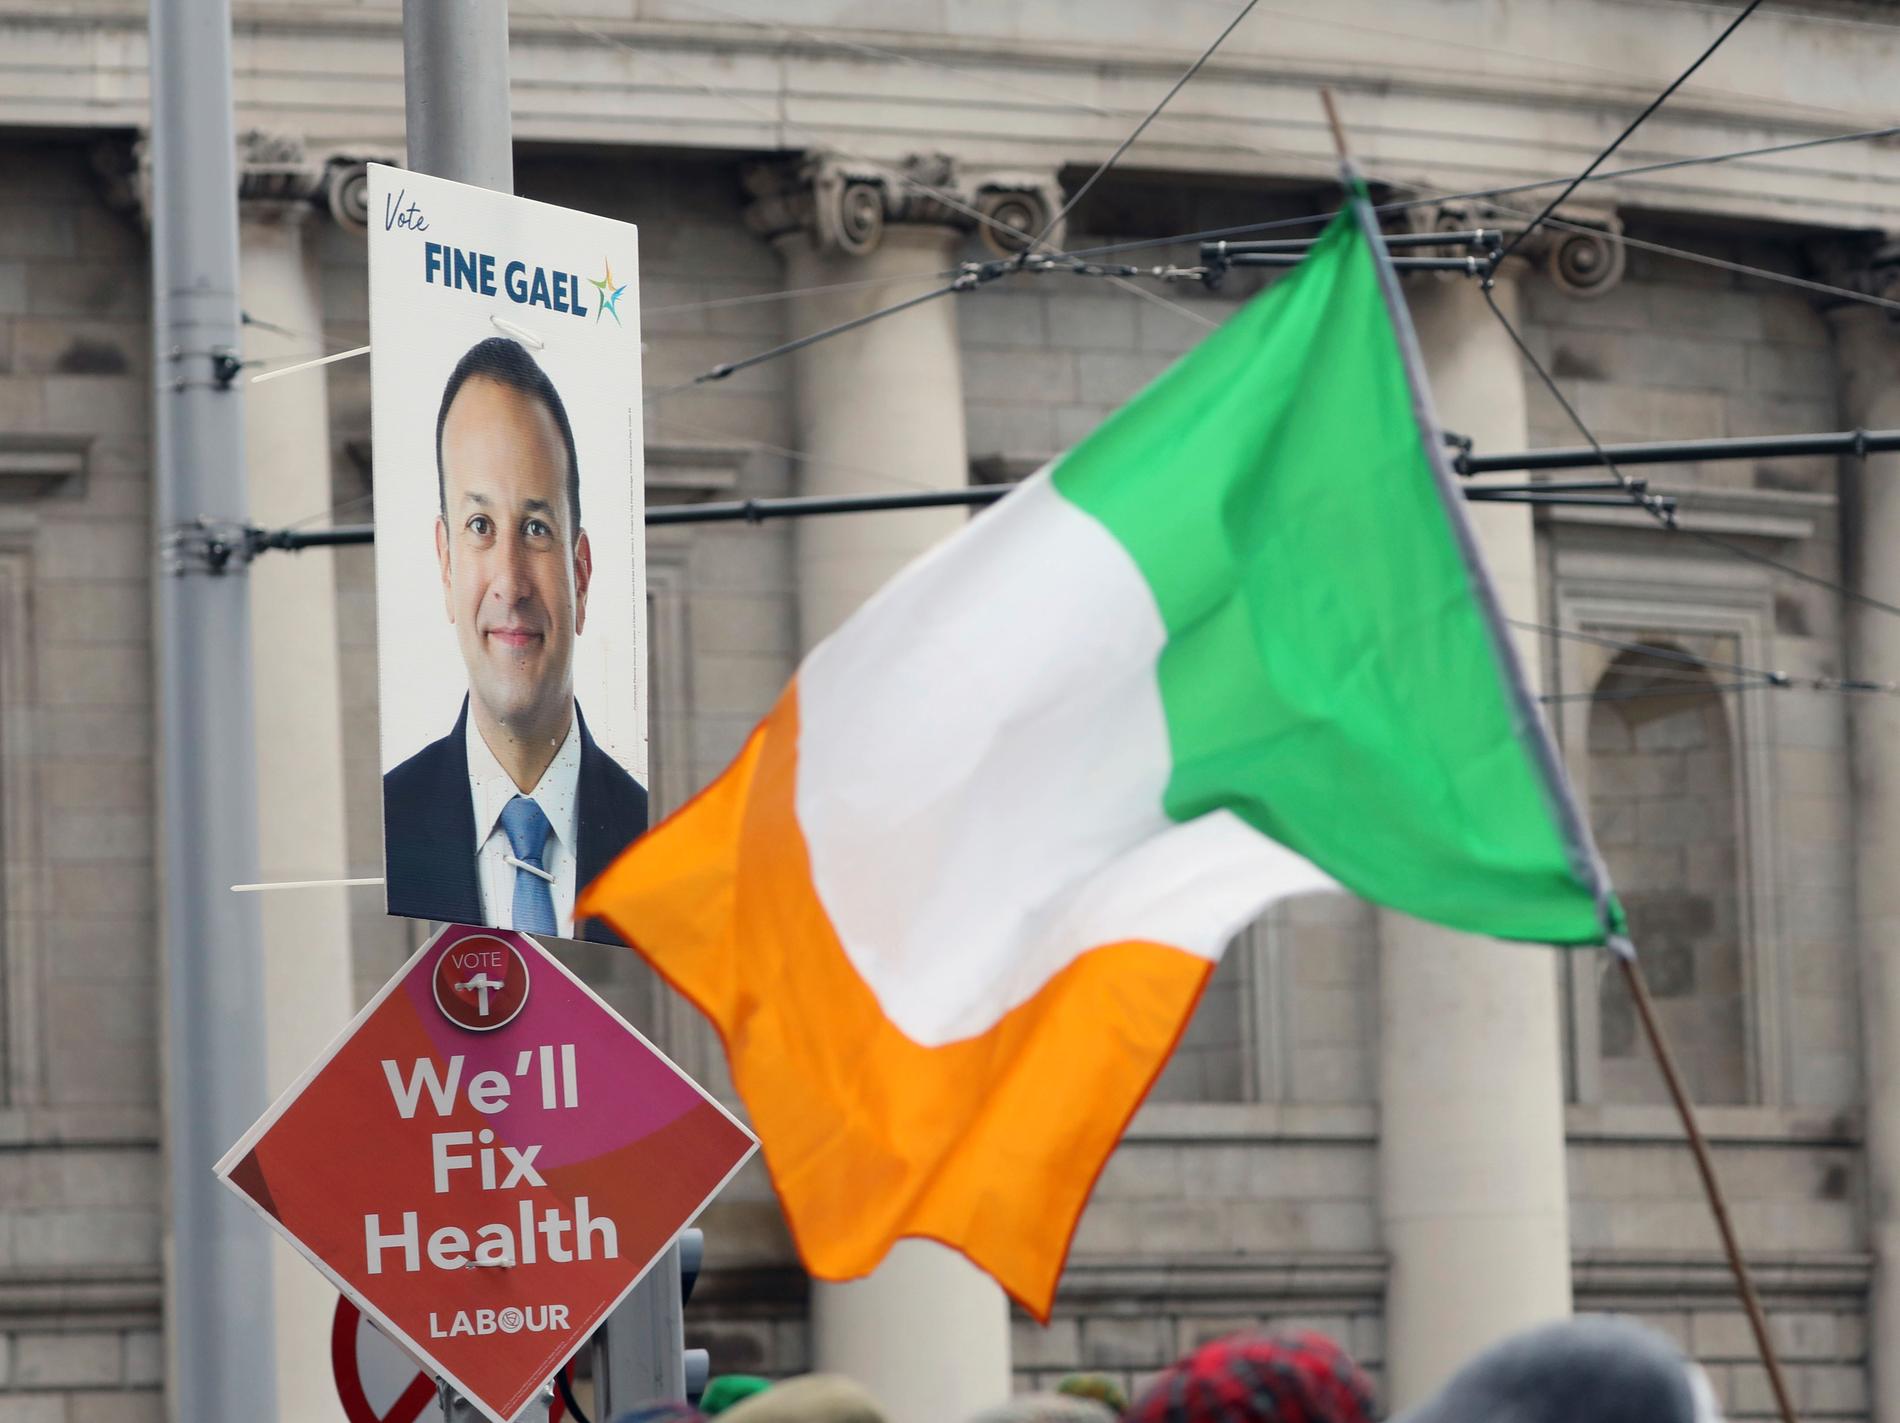 Valaffischer på en lyktstolpe i Dublin i samband med lördagens parlamentsval, där premiärminister Leo Varadkar (på affischen) hoppas bli omvald.